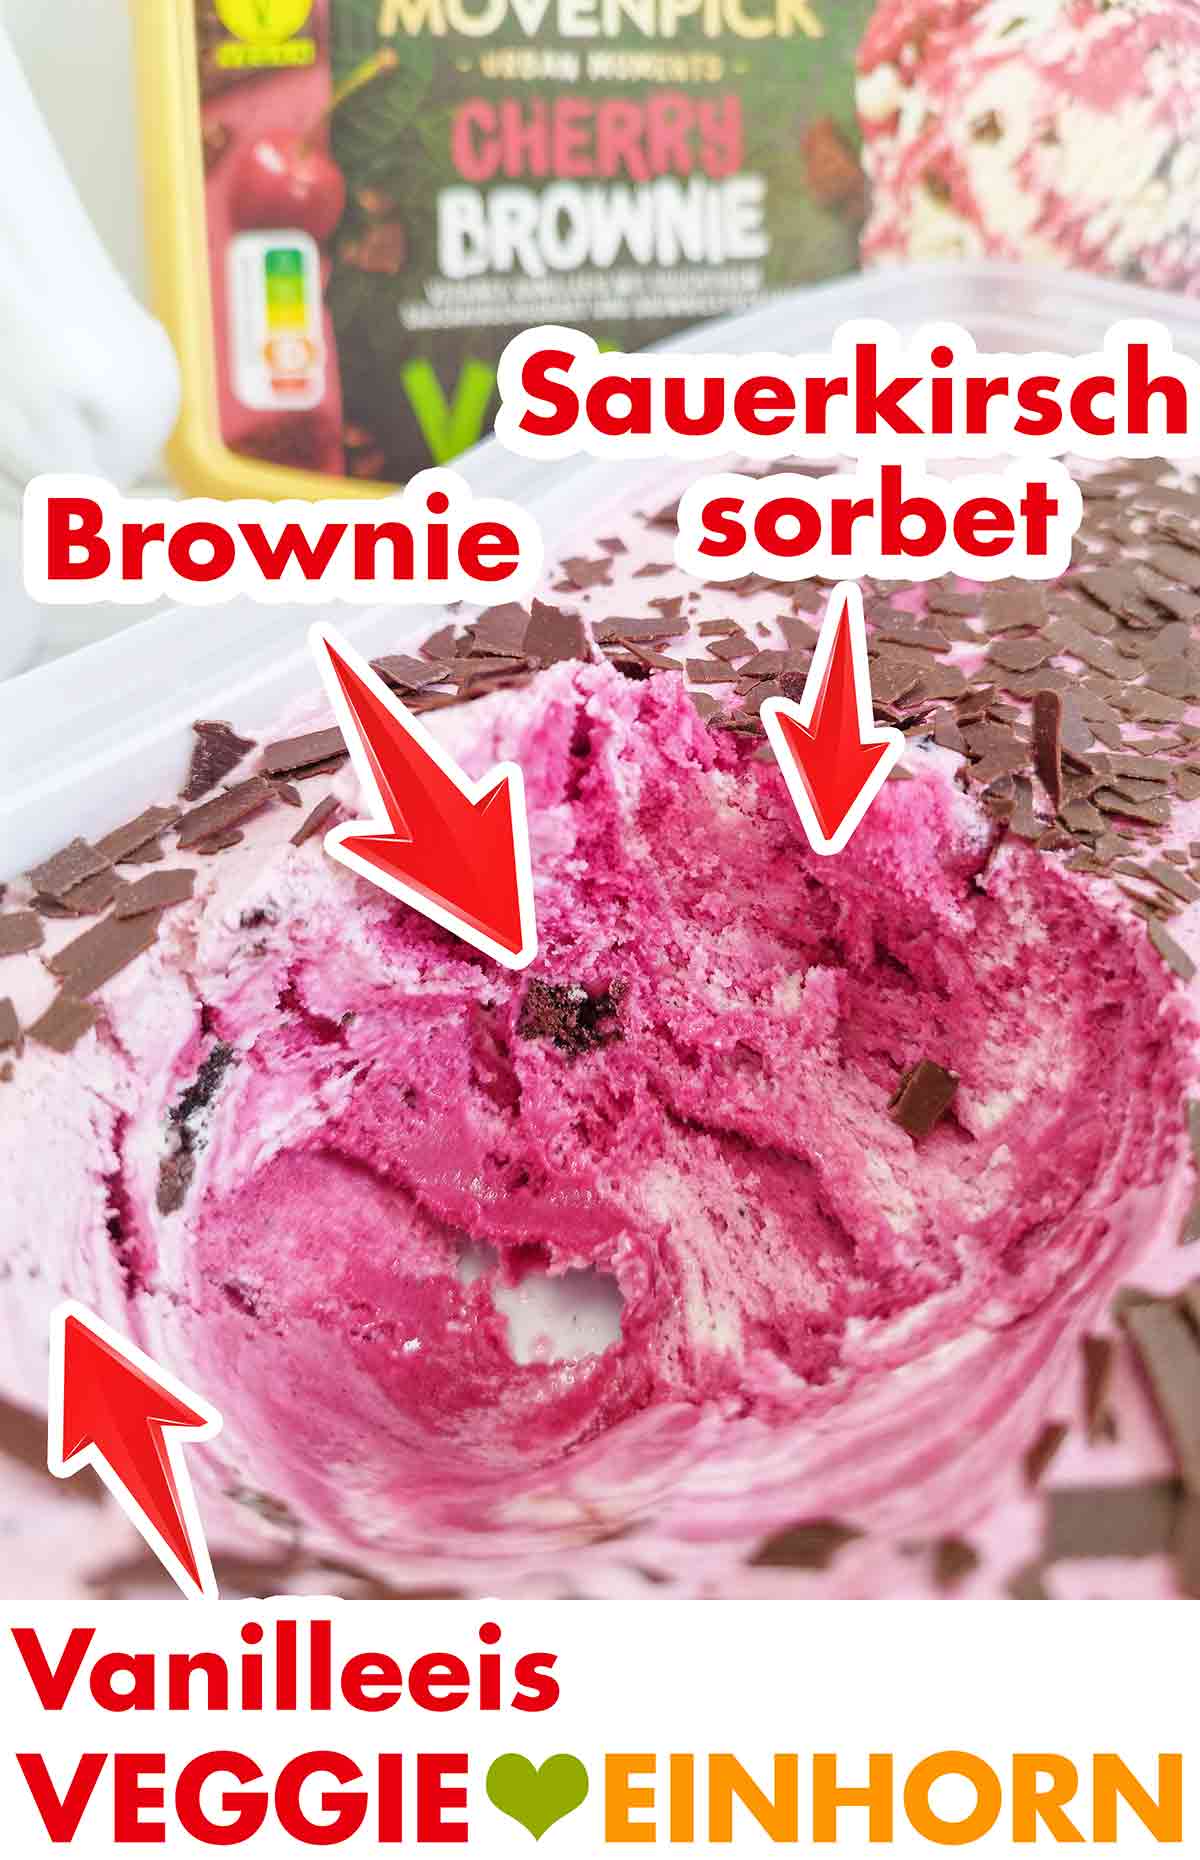 Brownie Stückchen, Sauerkirschsorbet und veganes Vanilleeis in der Sorte Cherry Brrownie von Mövenpick